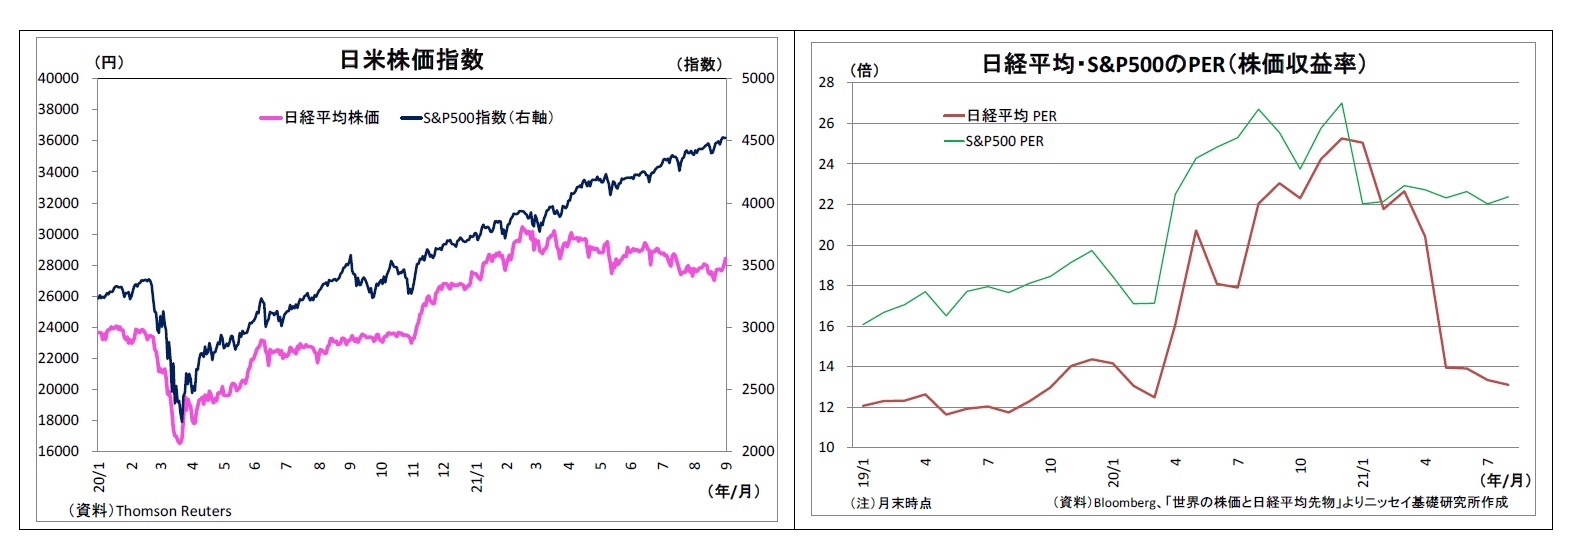 日米株価指数/日経平均・S&P500のPER（株価収益率）